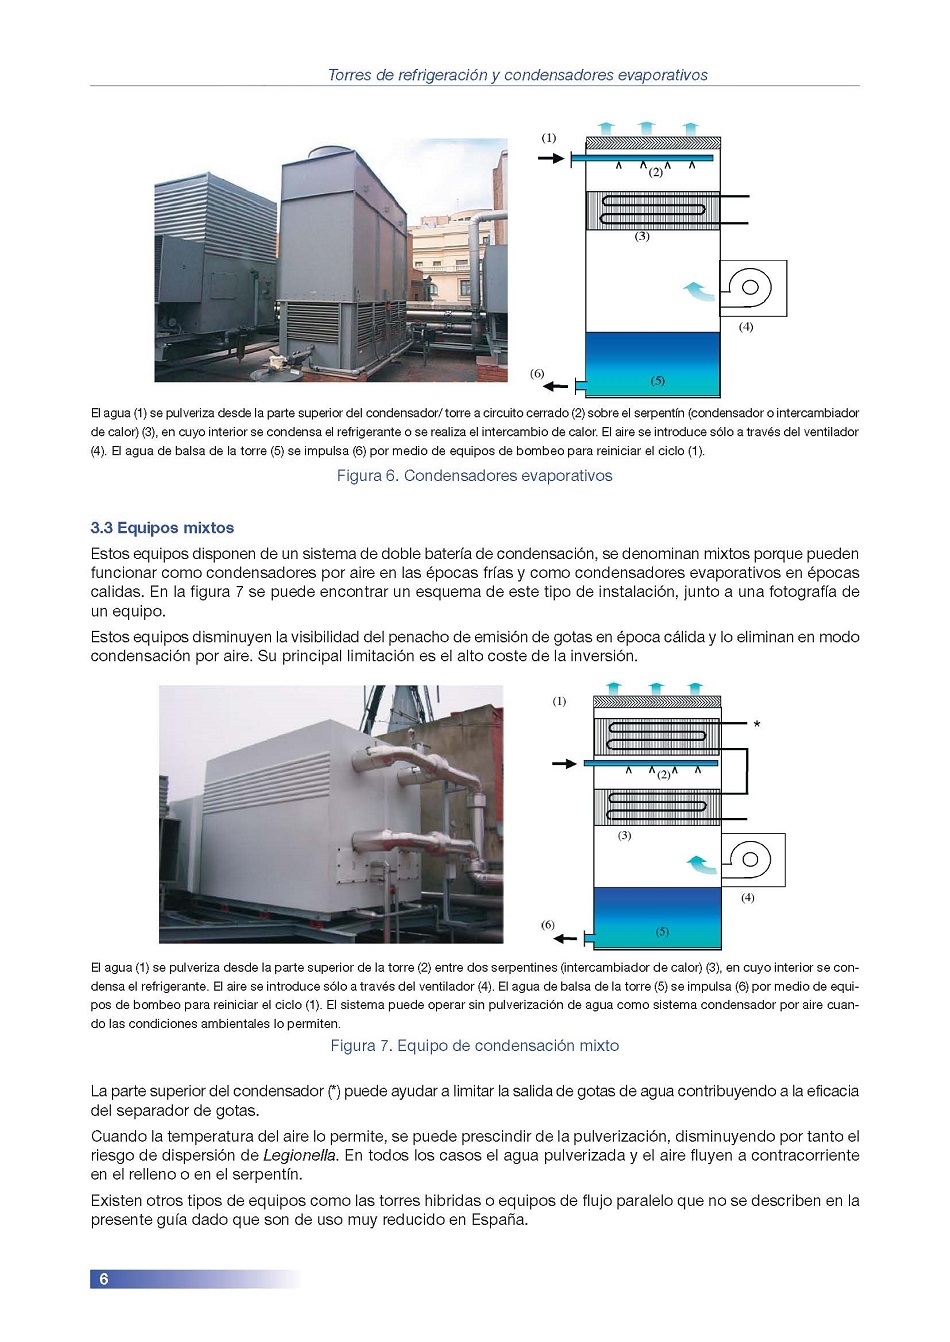 Torres de Refrigeracin y Condensadores Evaporativos. Pgina 06